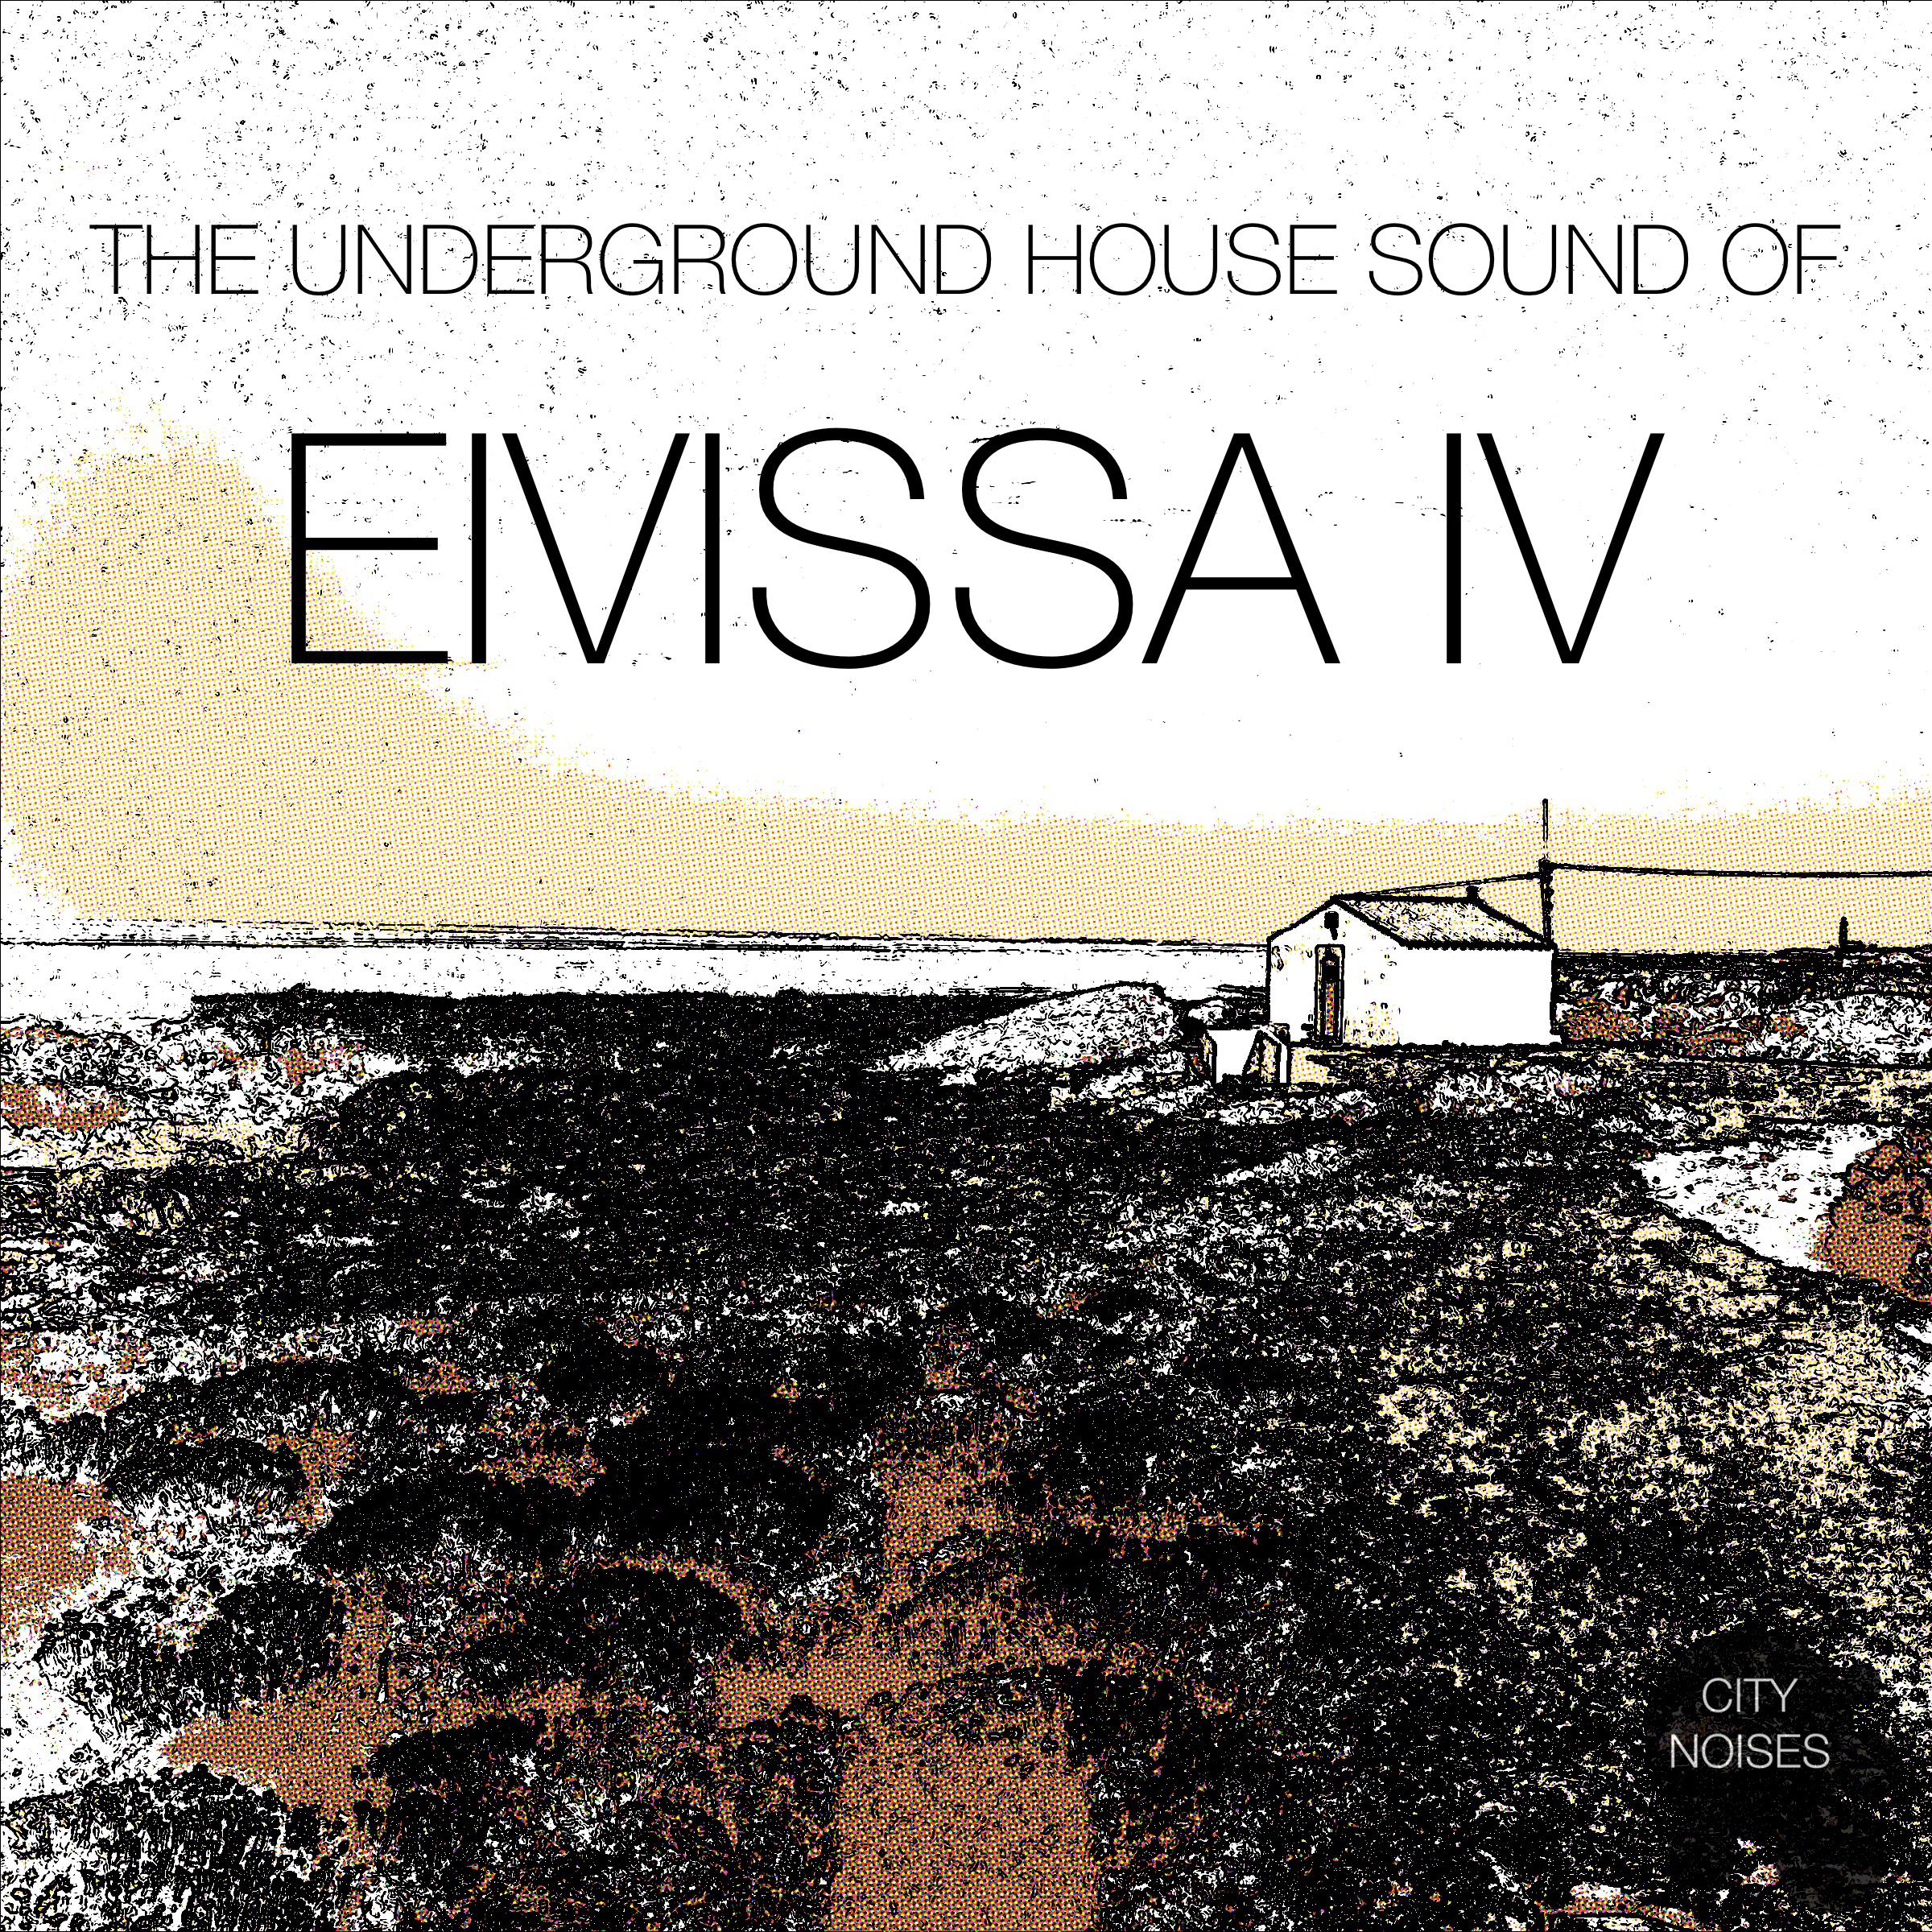 The Underground House Sound of Eivissa, Vol. 4